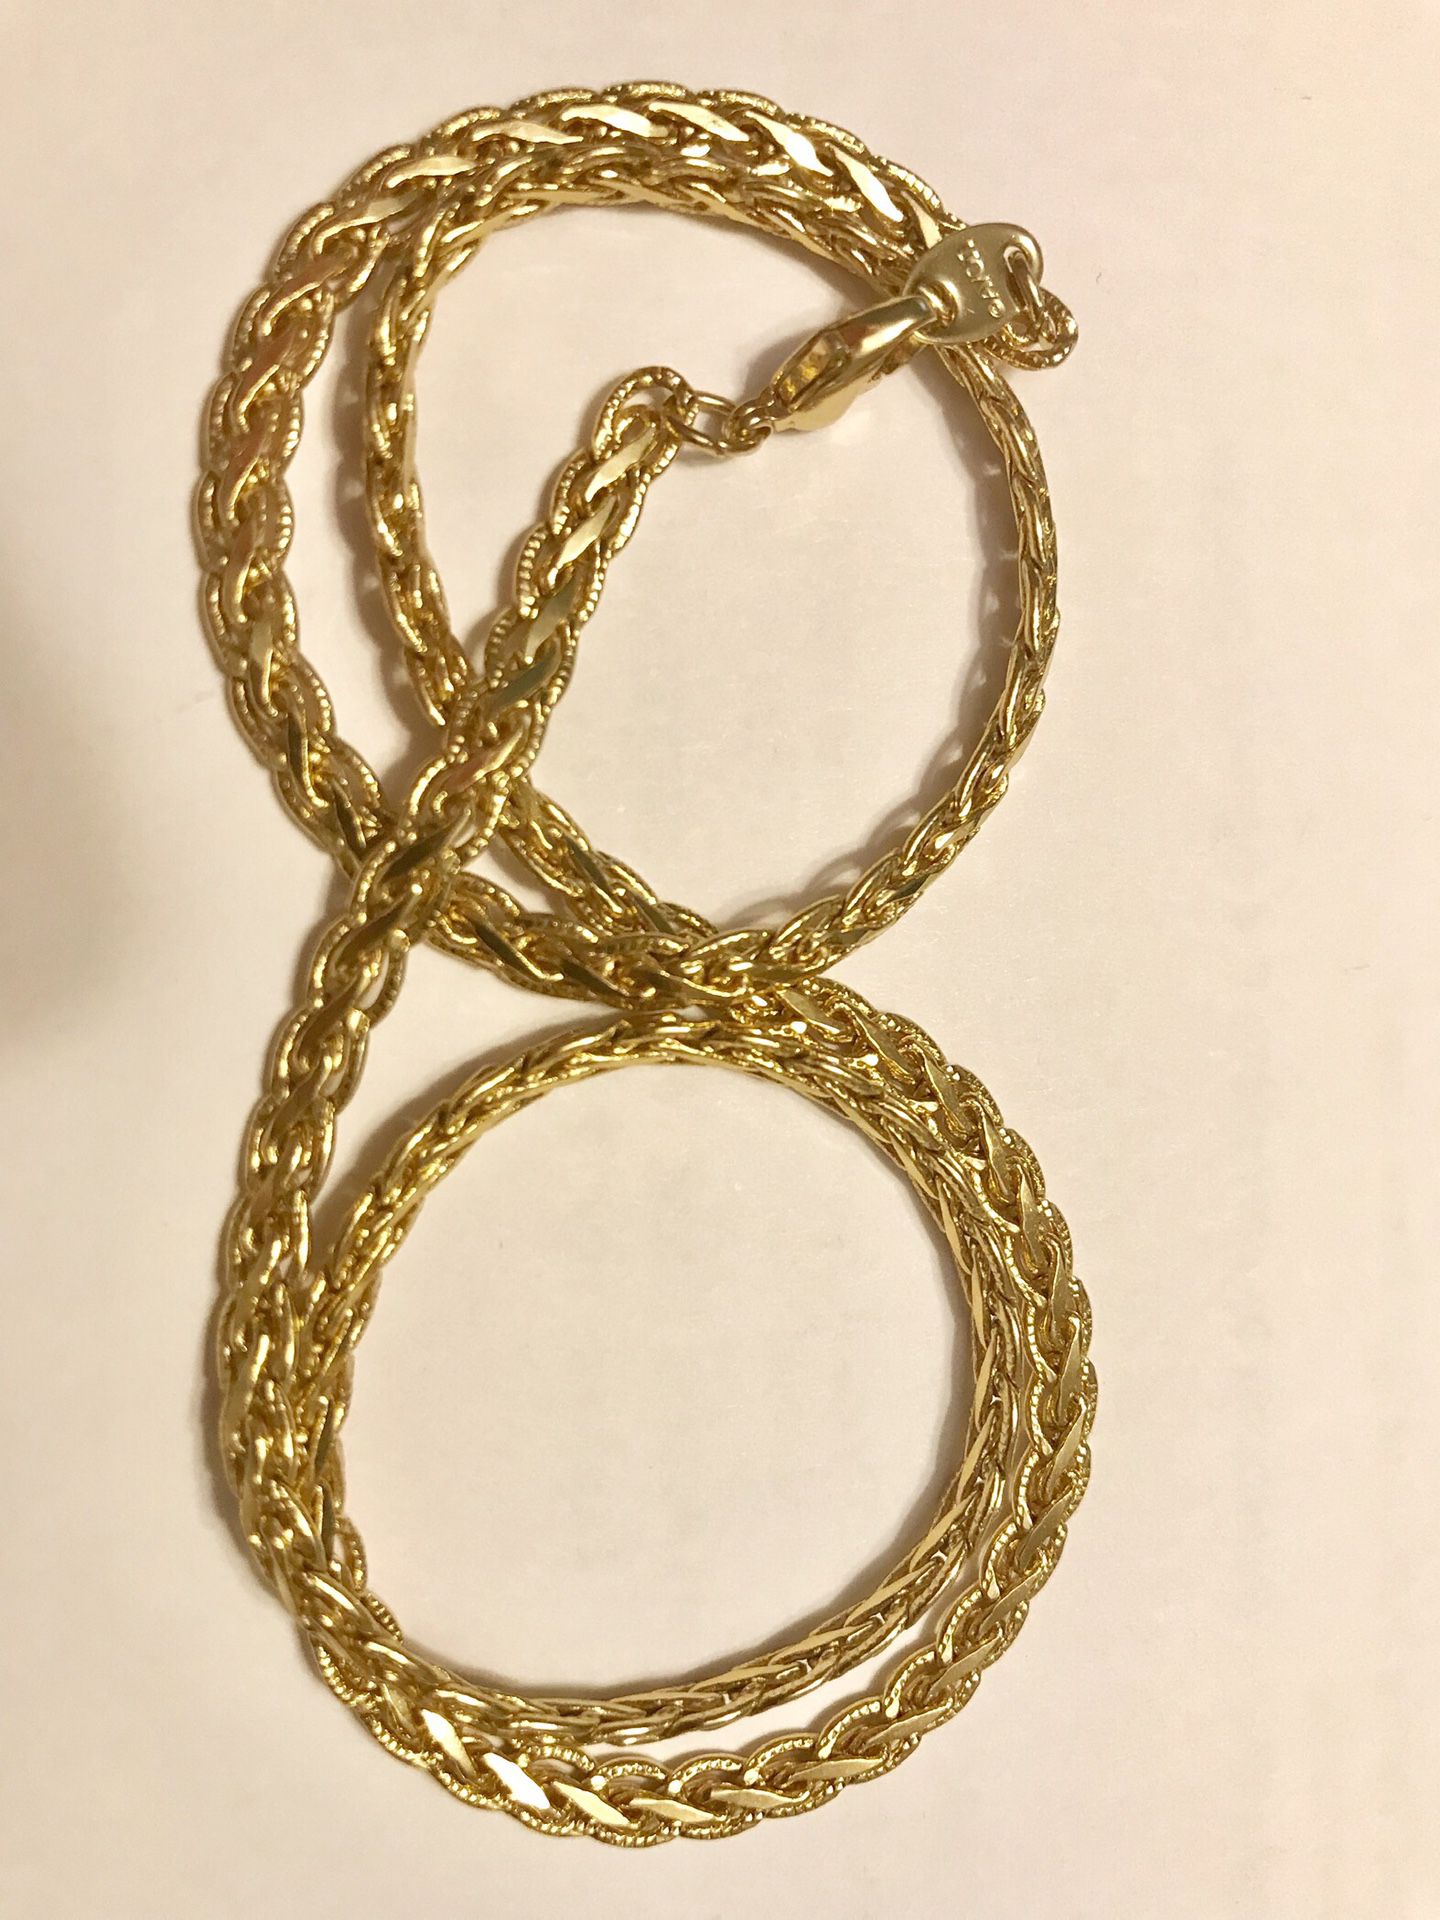 Avon Gold tone 19” chain